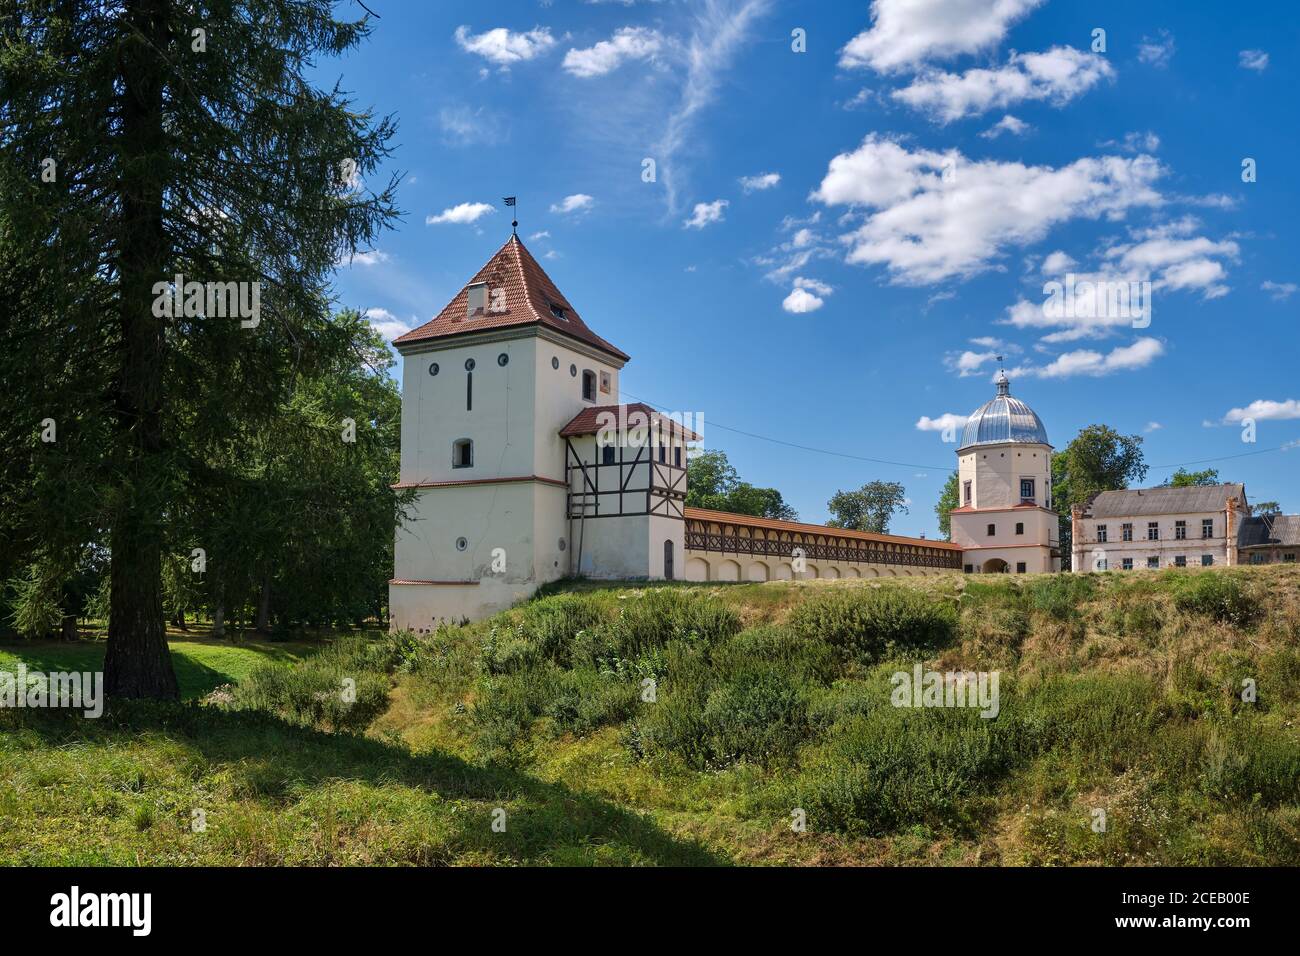 Ancien château ancien dans le village de Liubcha, région de Grodno, Biélorussie Banque D'Images